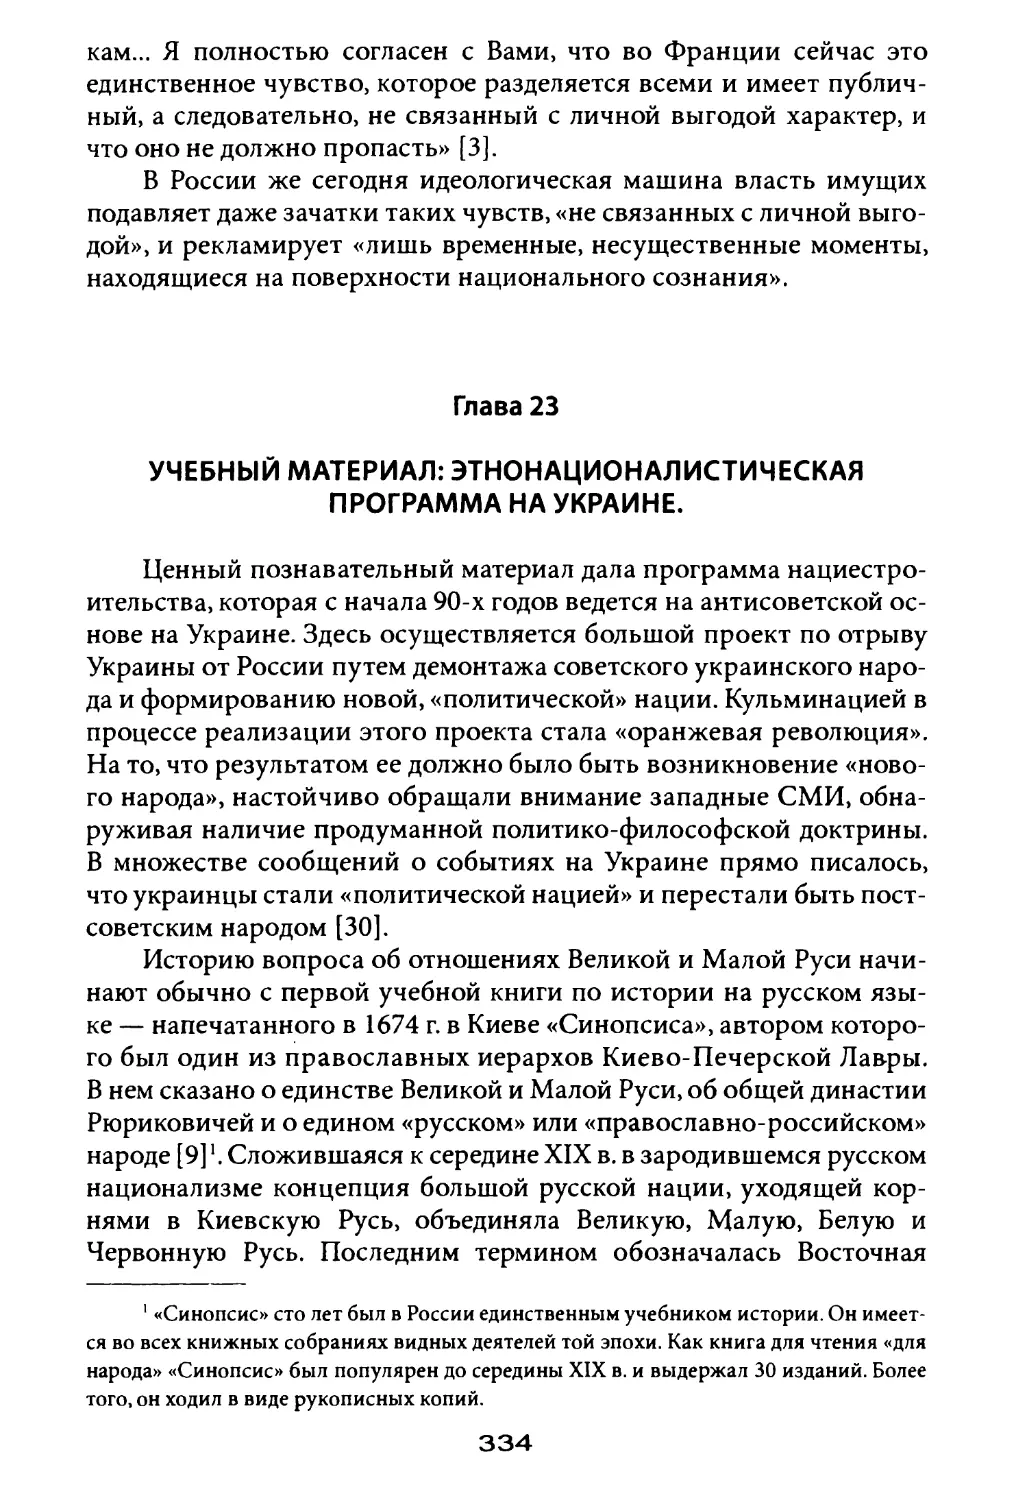 Глава 23. Учебный материал: этнонационалистическая программа на Украине